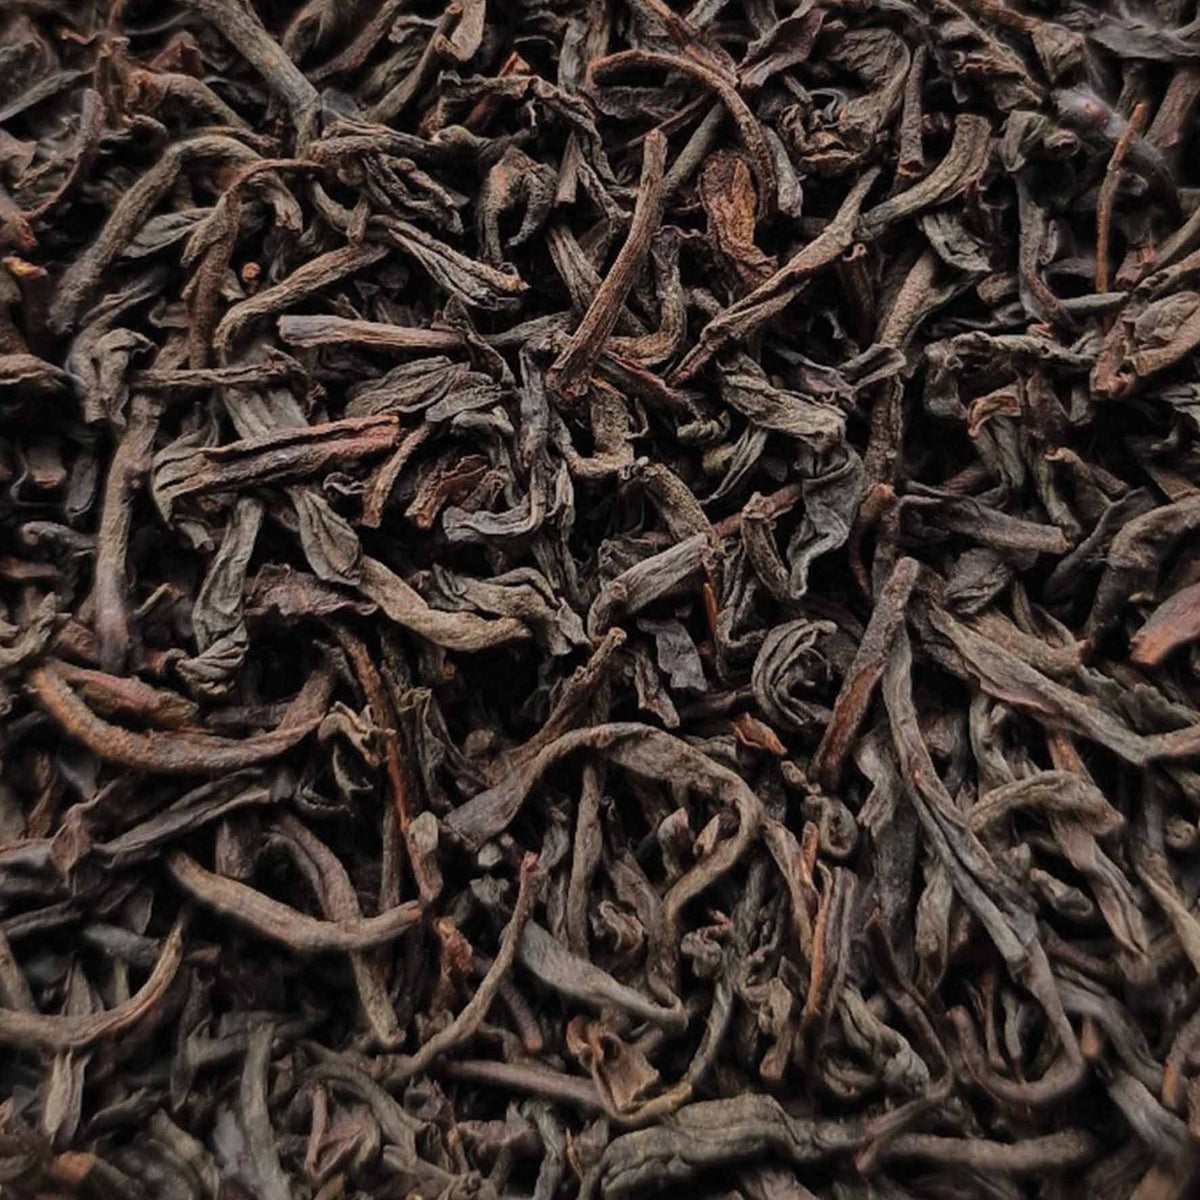 Premium Ceylon Black Estate Loose Leaf Tea - tea leaves